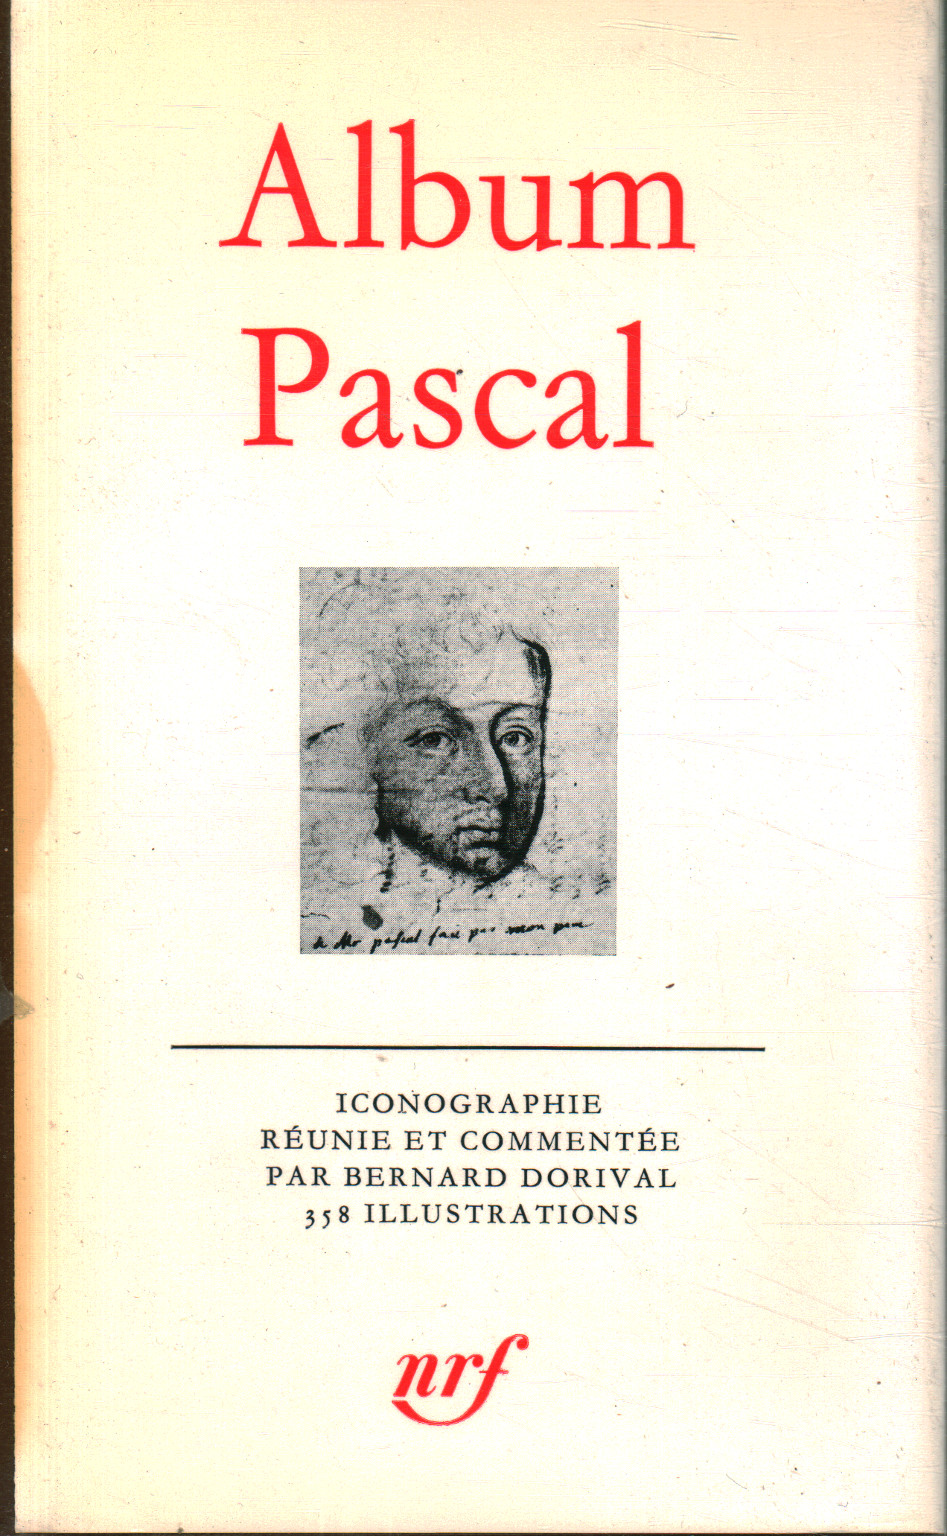 Álbum de Pascal, Bernard Dorival